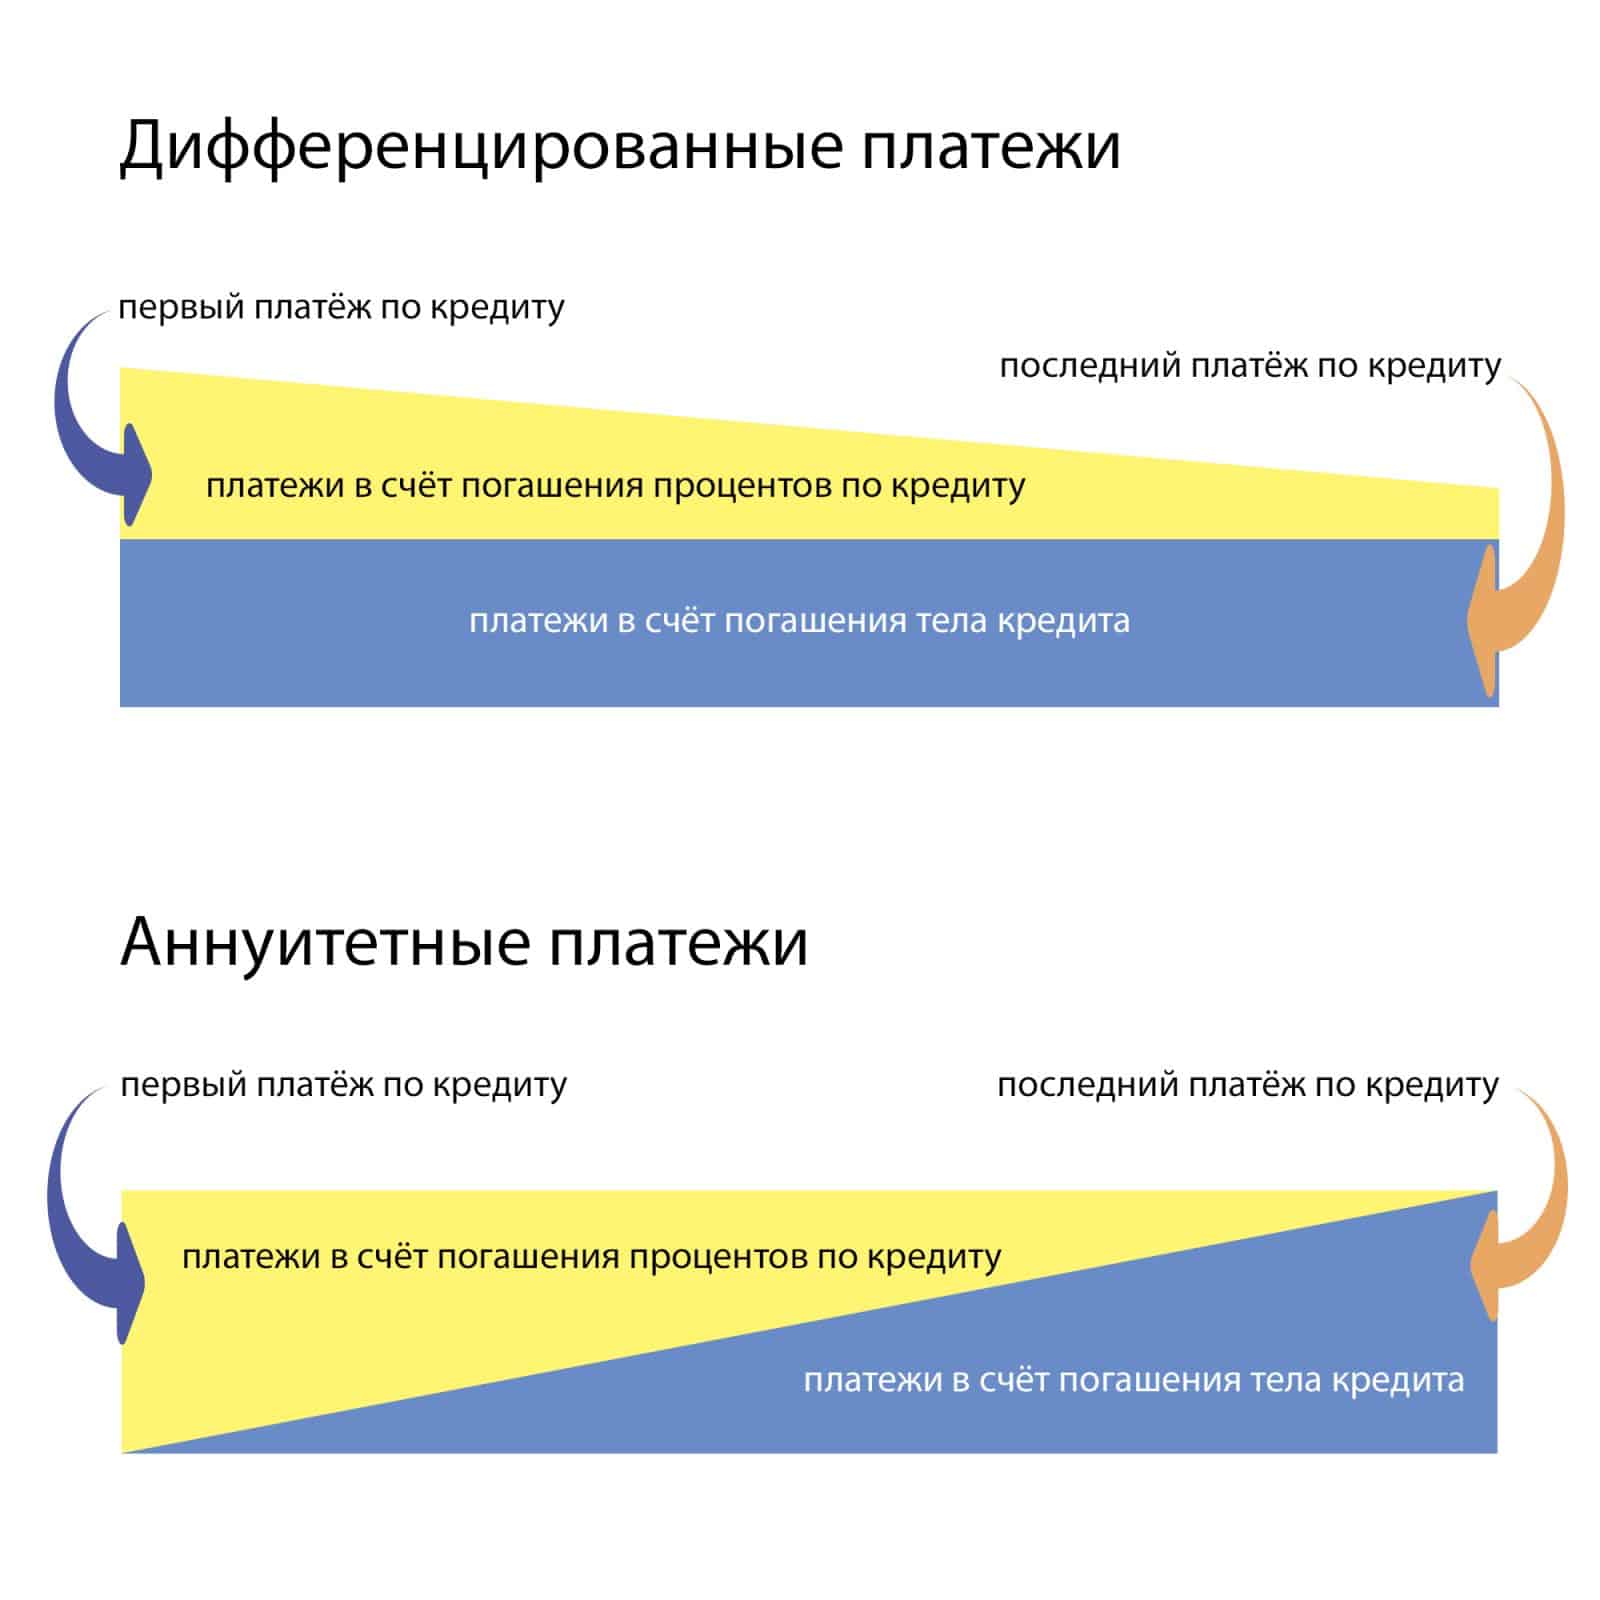 Что такое дифференцированный платёж по кредиту? — finfex.ru